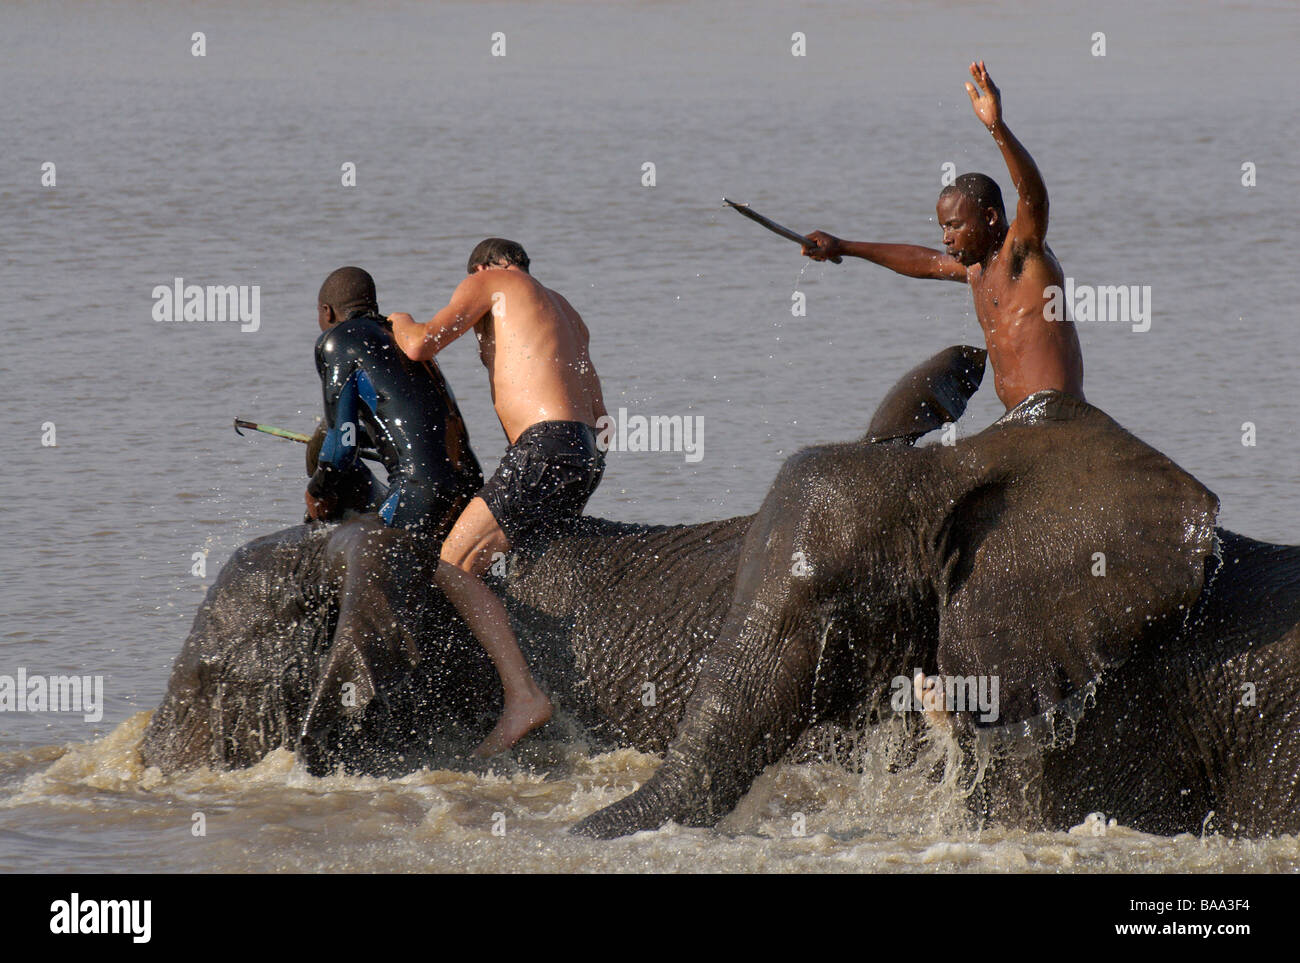 Respaldado safaris montando elefantes Elefante Elefante Africano Loxodonta africana de la naturaleza y el hombre al hombre sobre la experiencia única de elefante Foto de stock